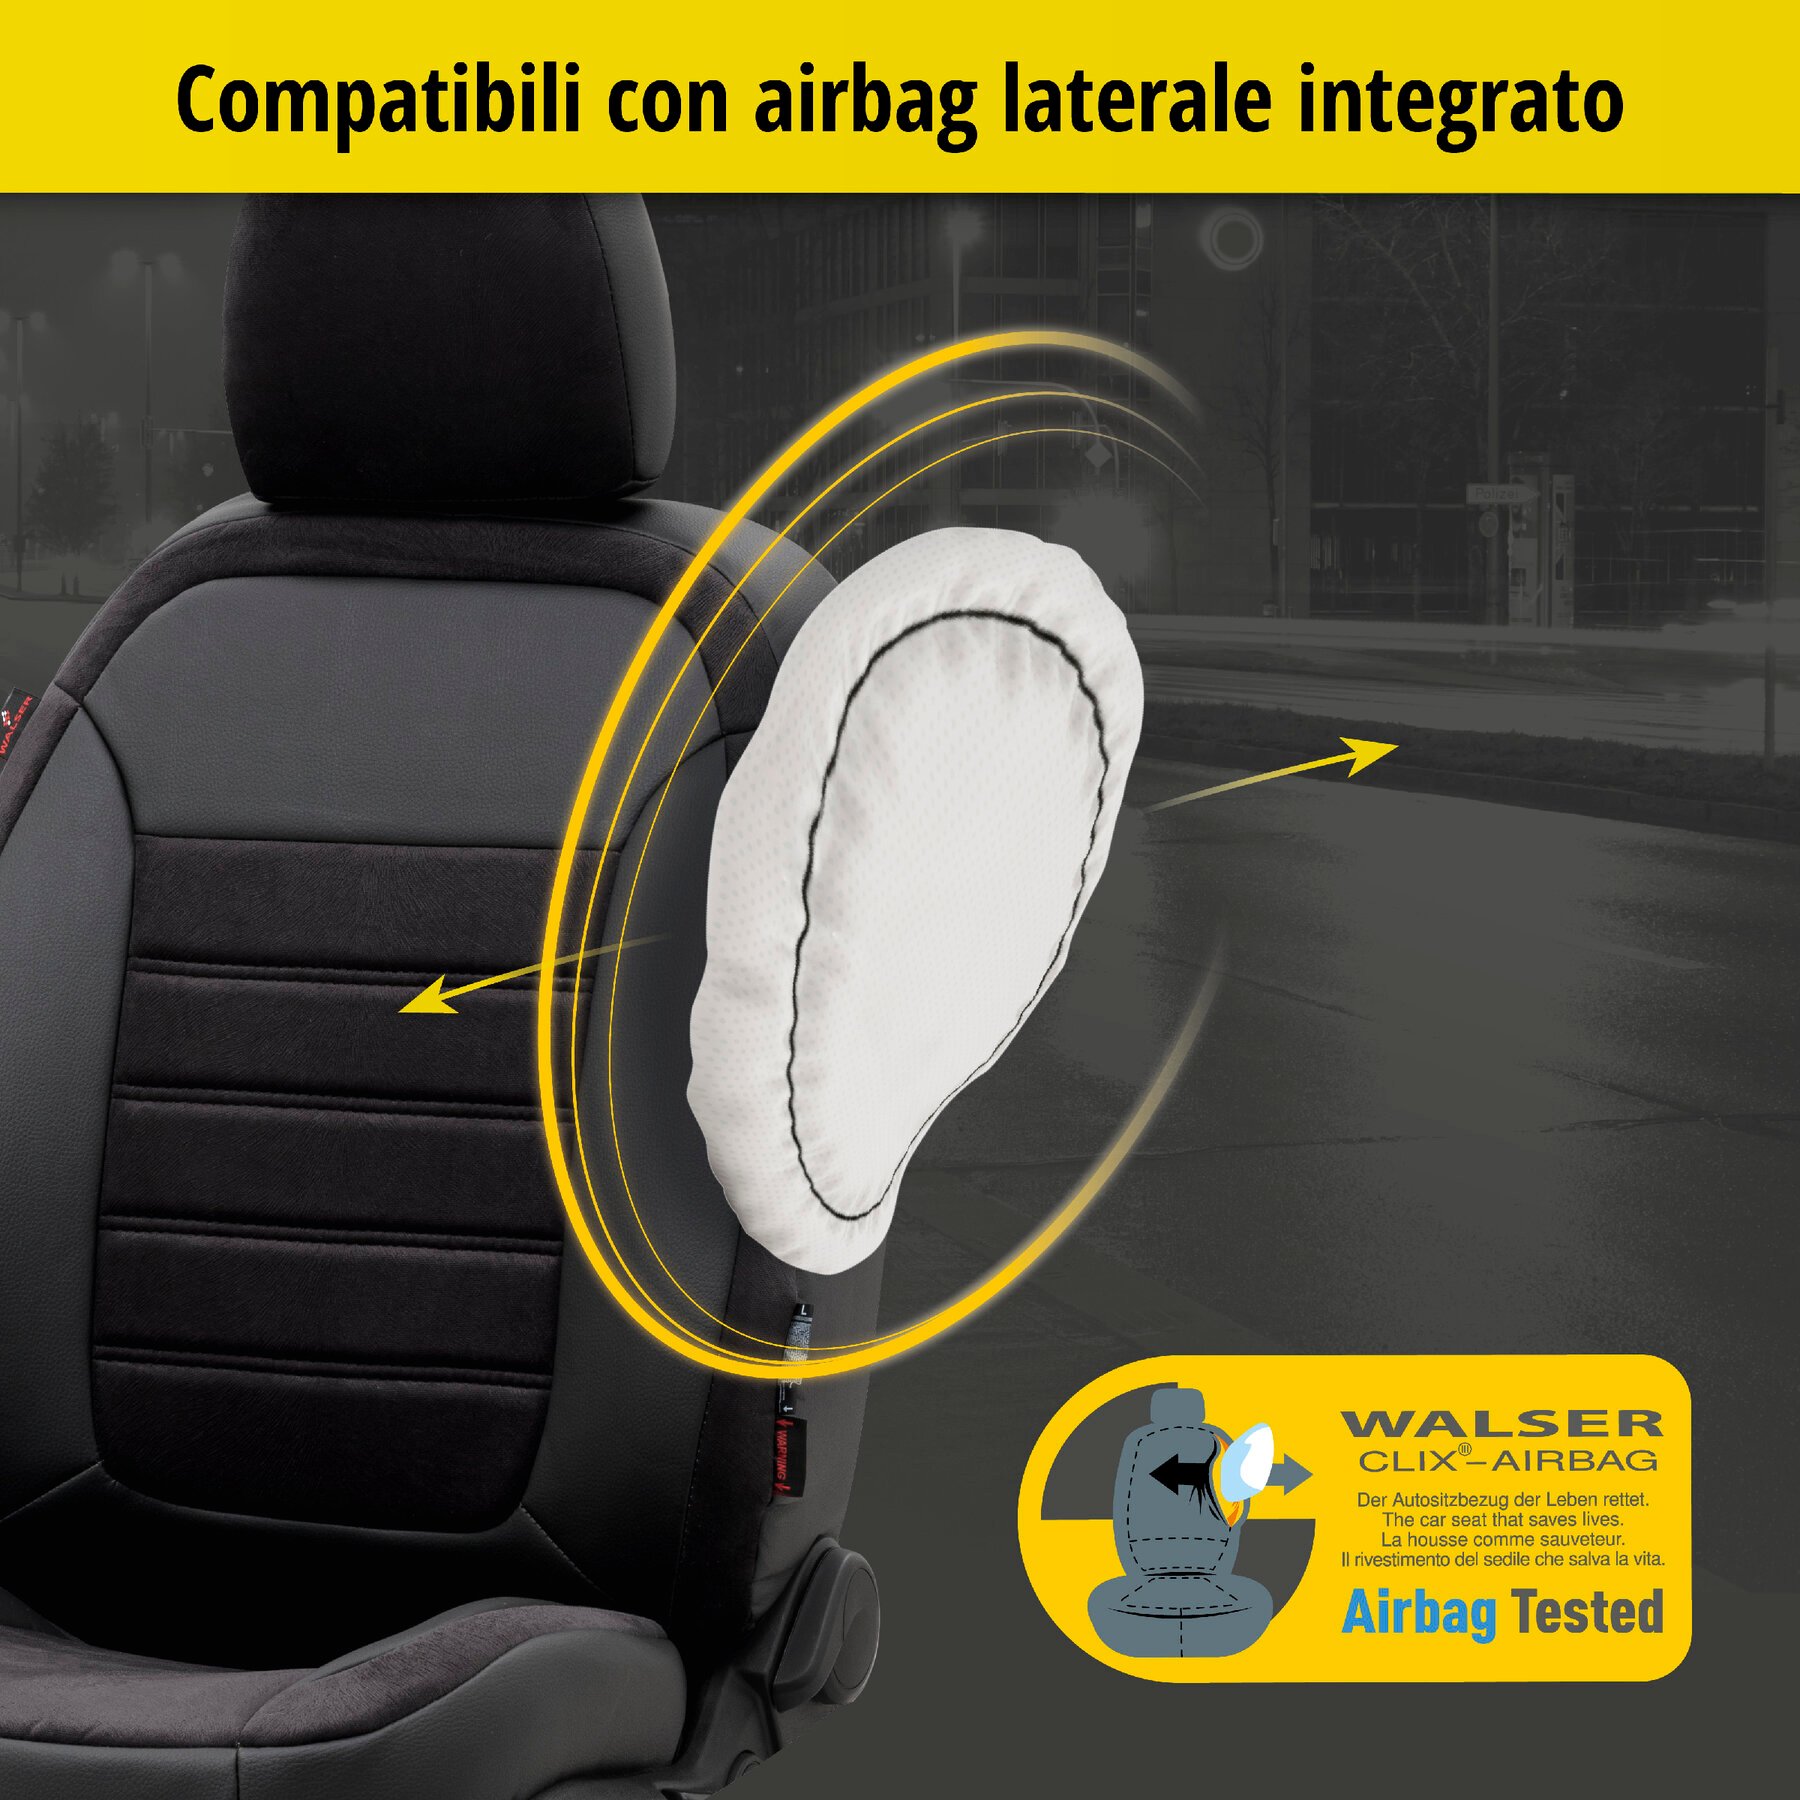 Coprisedili Bari per Dacia Duster 10/2017-Oggi, 2 coprisedili singoli per sedili normali